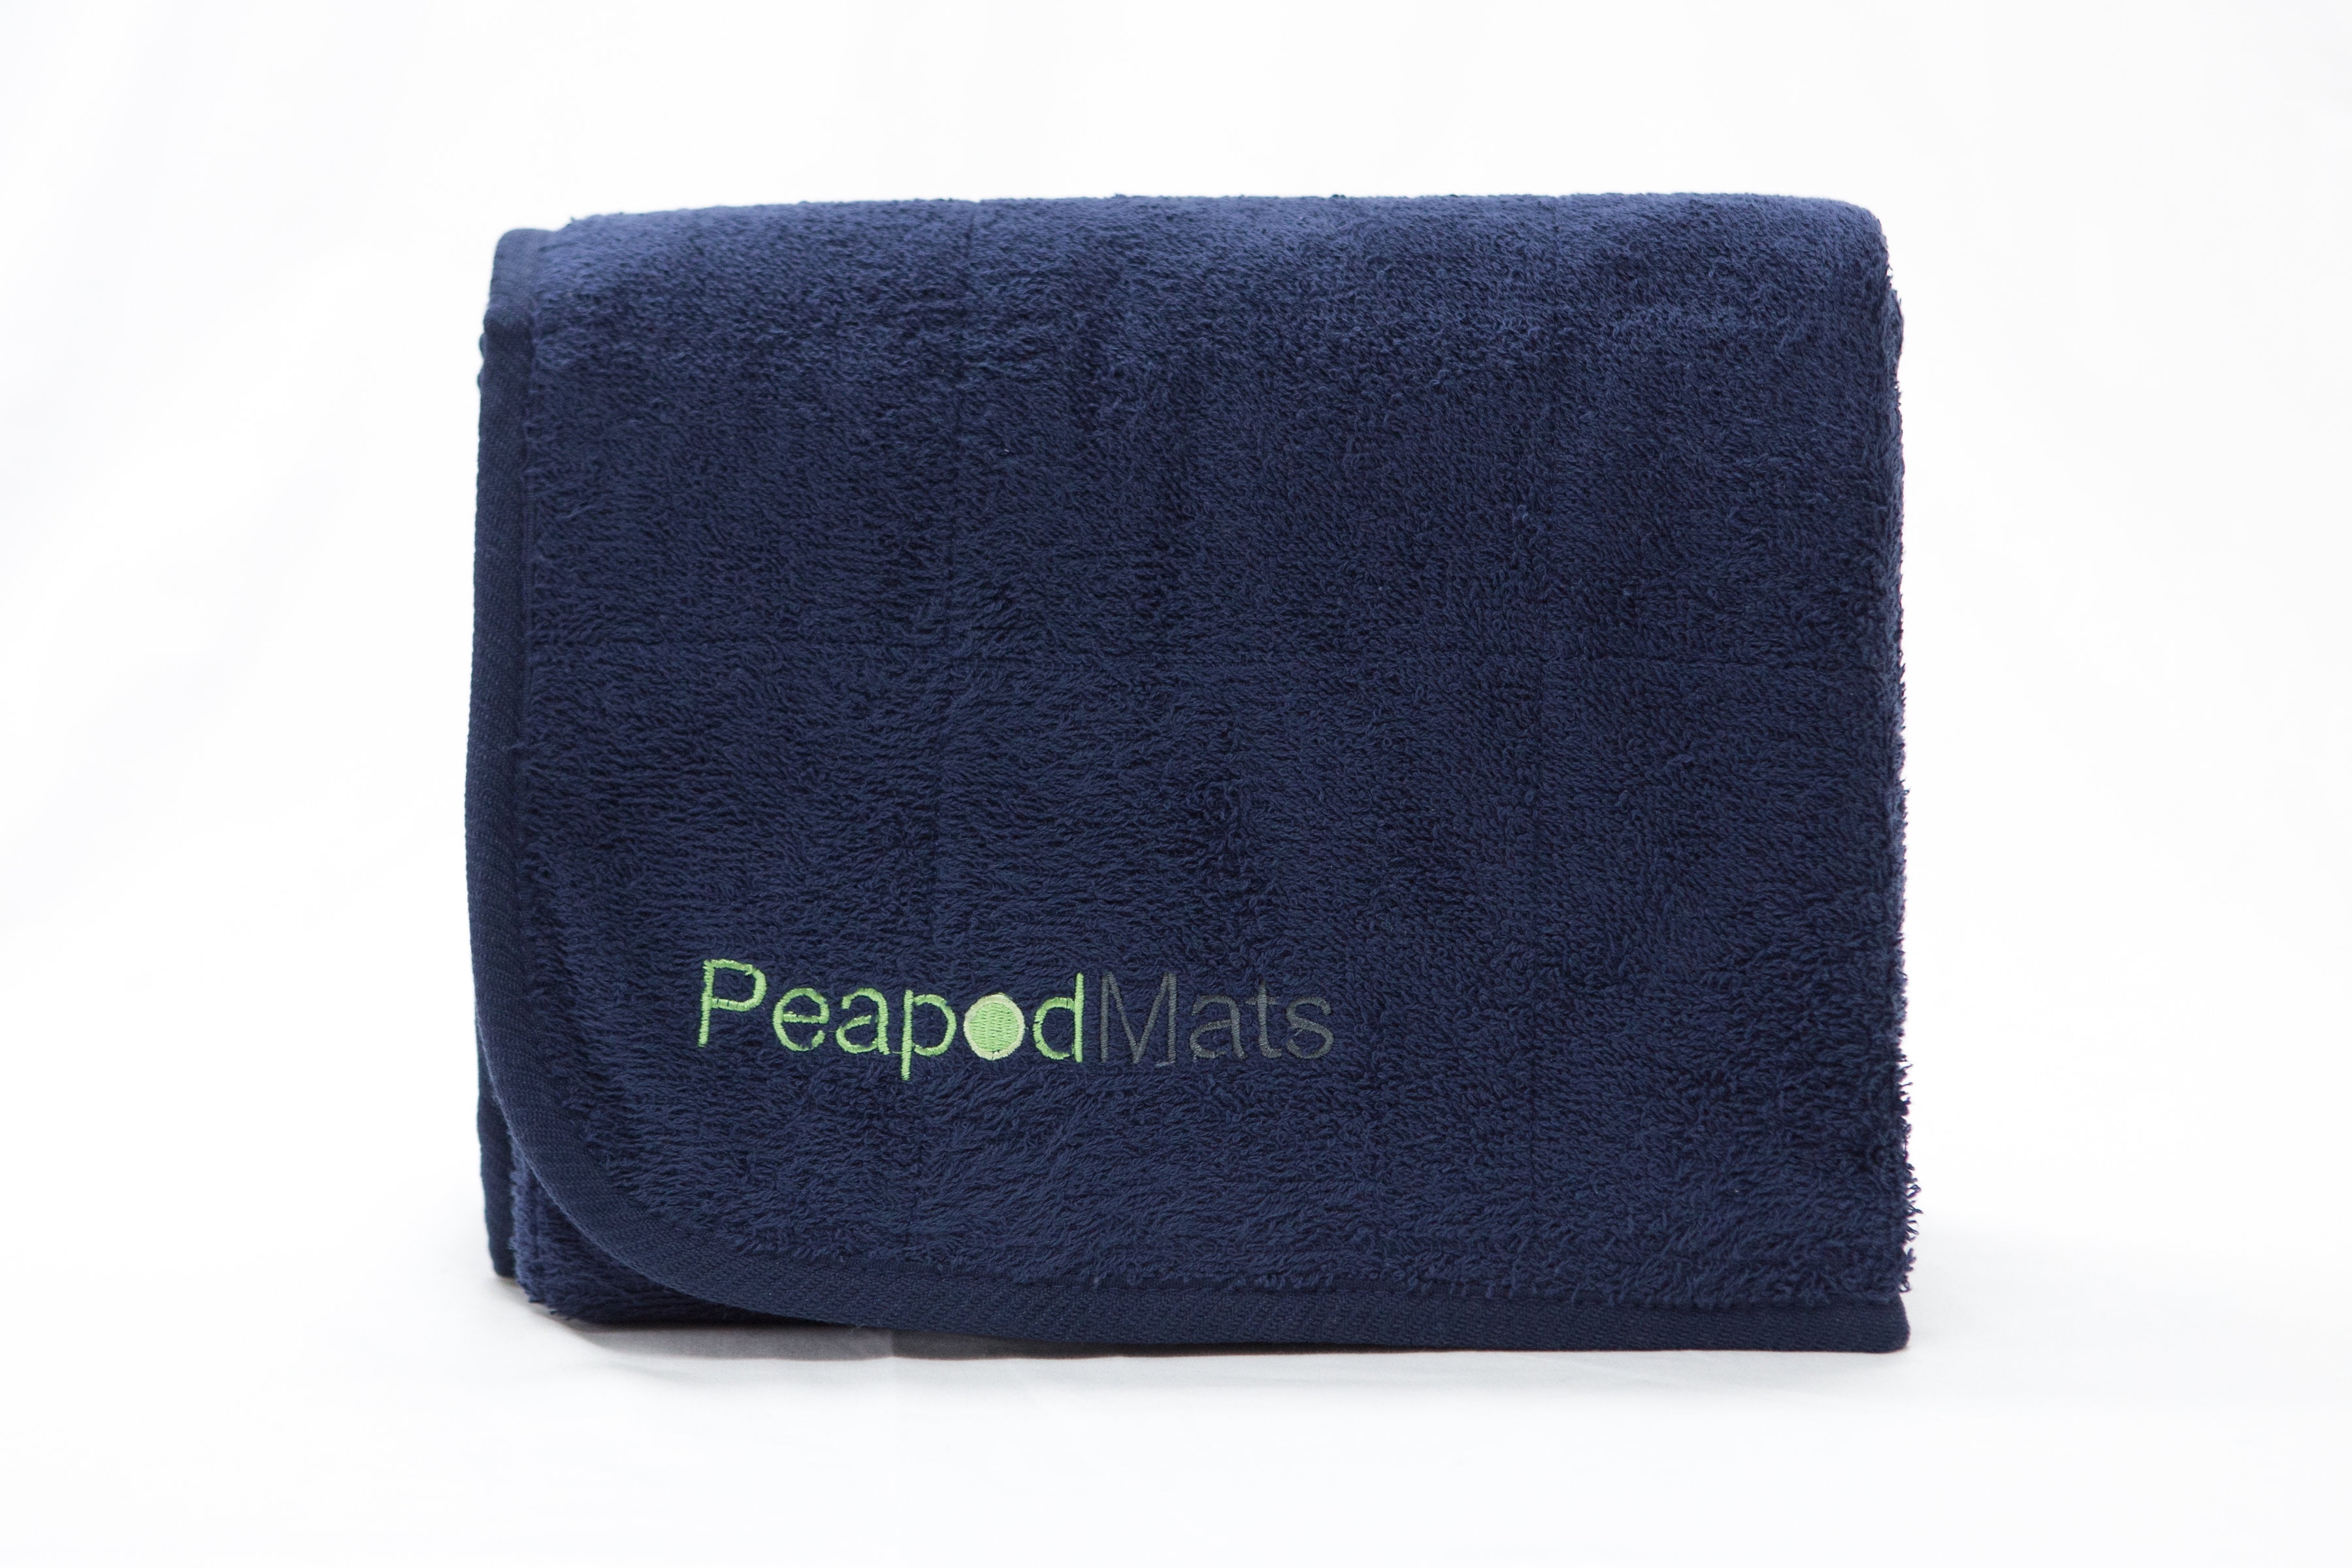 PeapodMats - Waterproof Bedwetting and Incontinence Mats